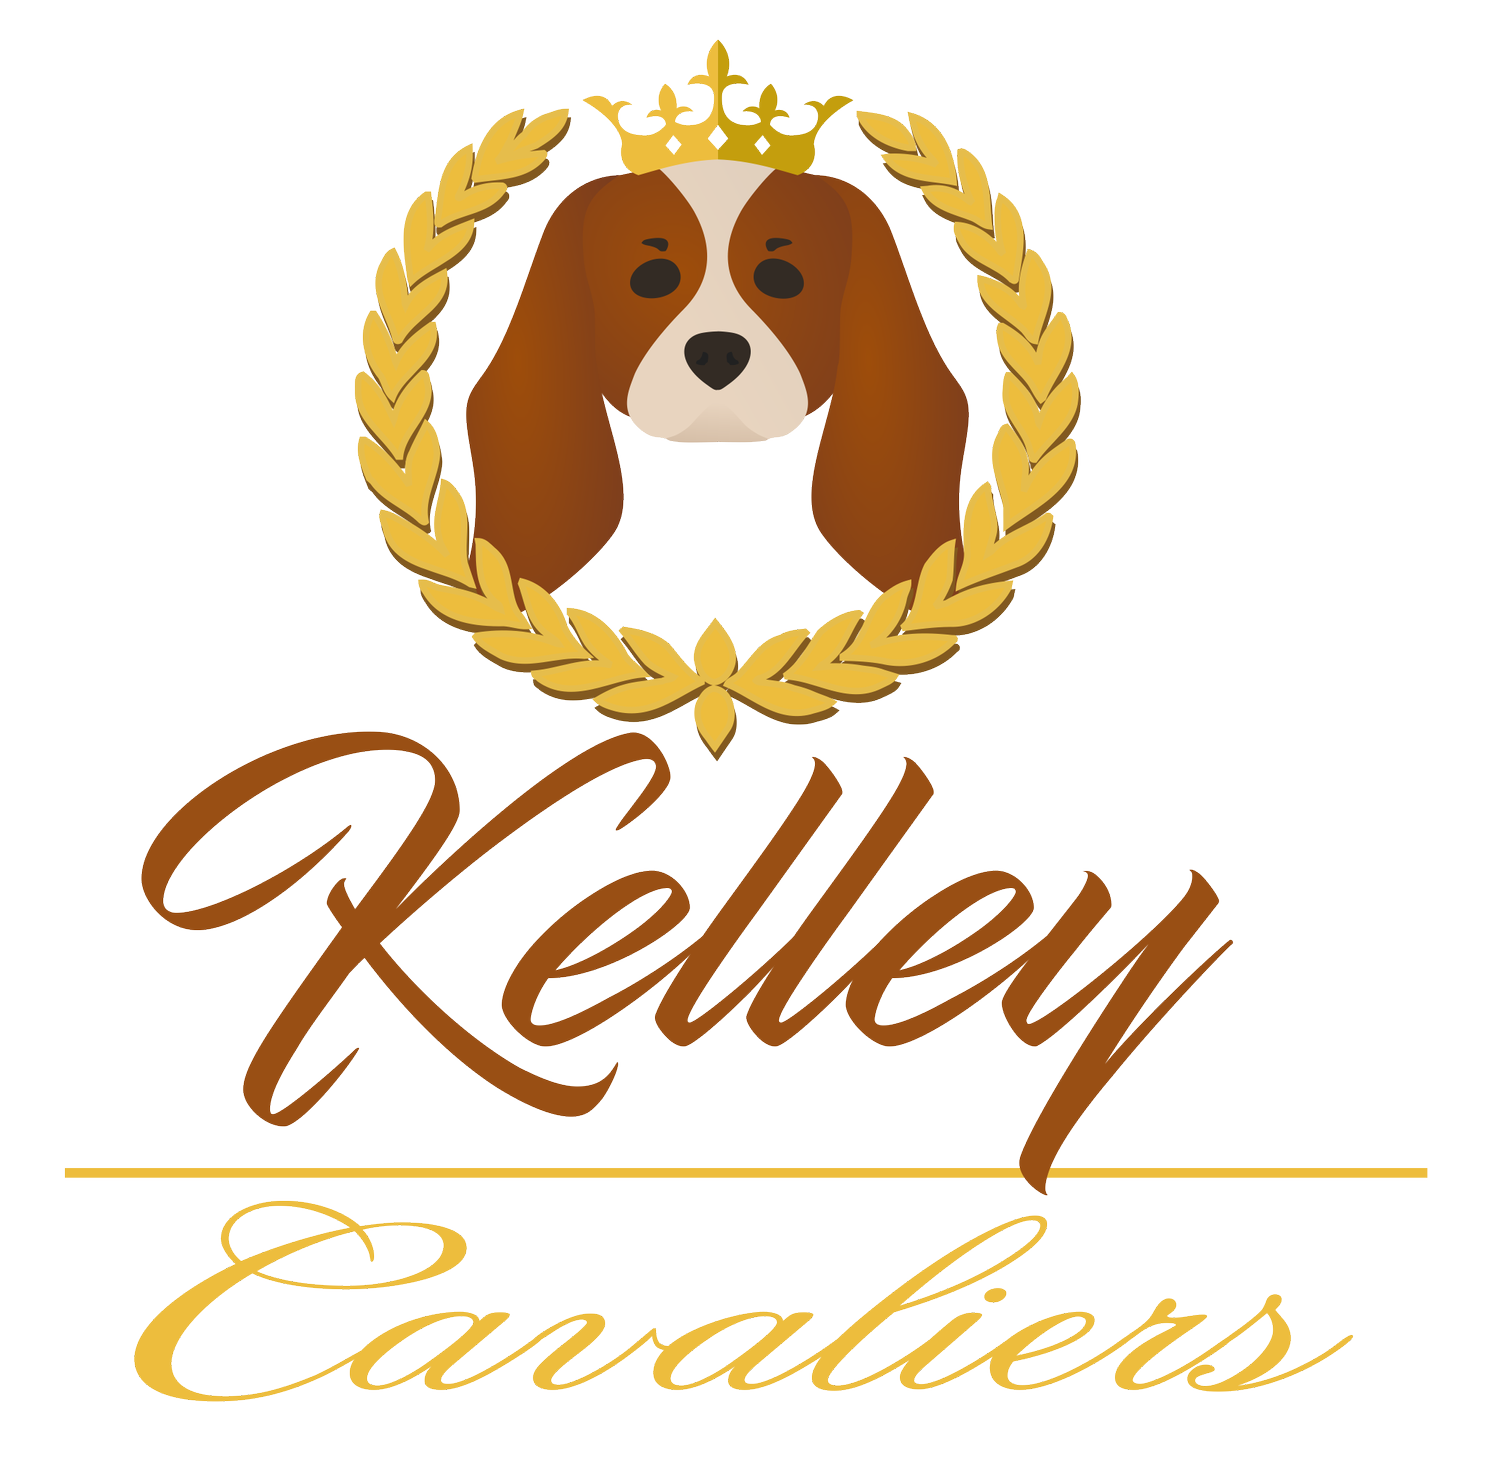 Kelley Cavaliers 